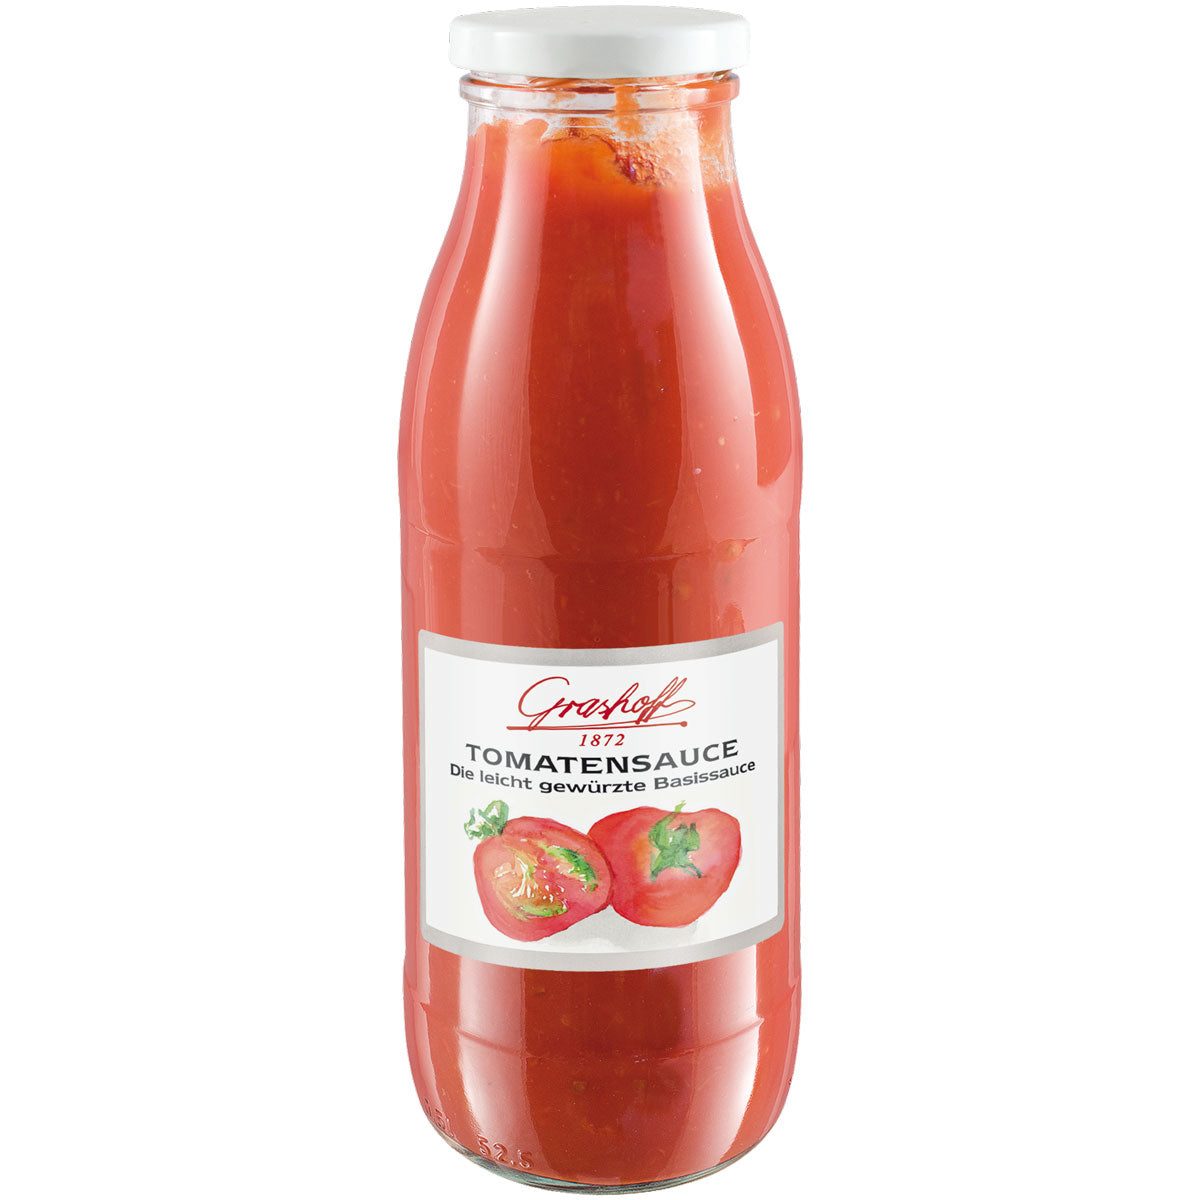 Tomatensauce in der Flasche von Grashoff